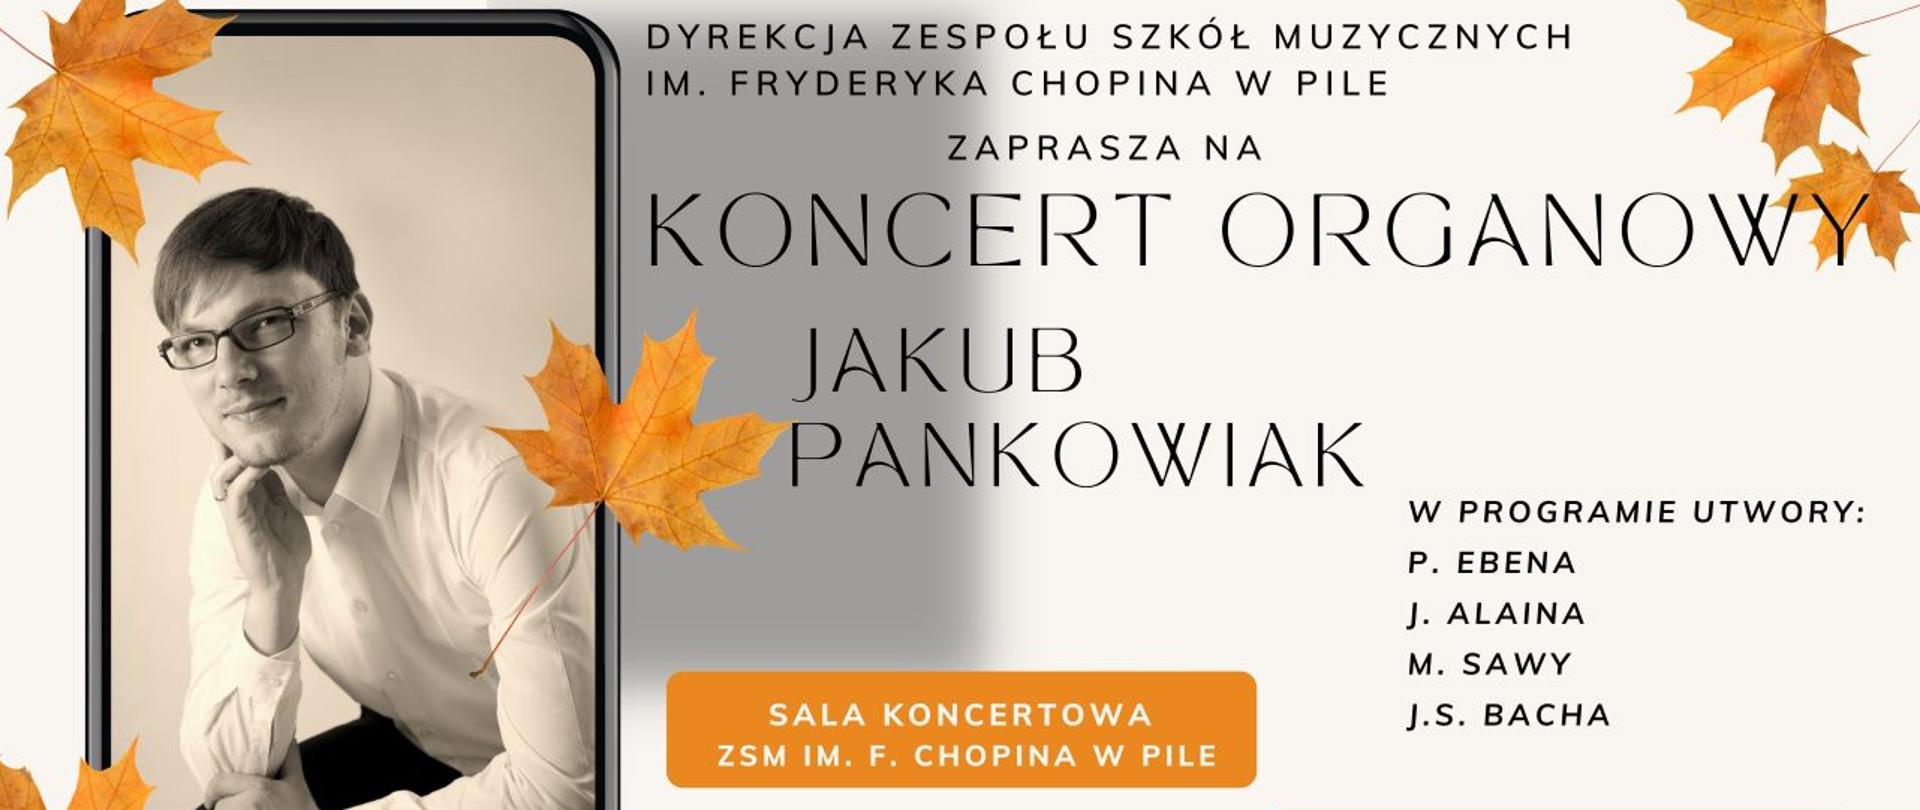 Na szarym tle z lewej zdjęcie ze smartfona wykonawcy koncertu Jakuba Pankowiaka, przykryte jesiennymi liśćmi. Po prawej informacja o koncercie - sala koncertowa ZSM im F. Chopina w Pile 